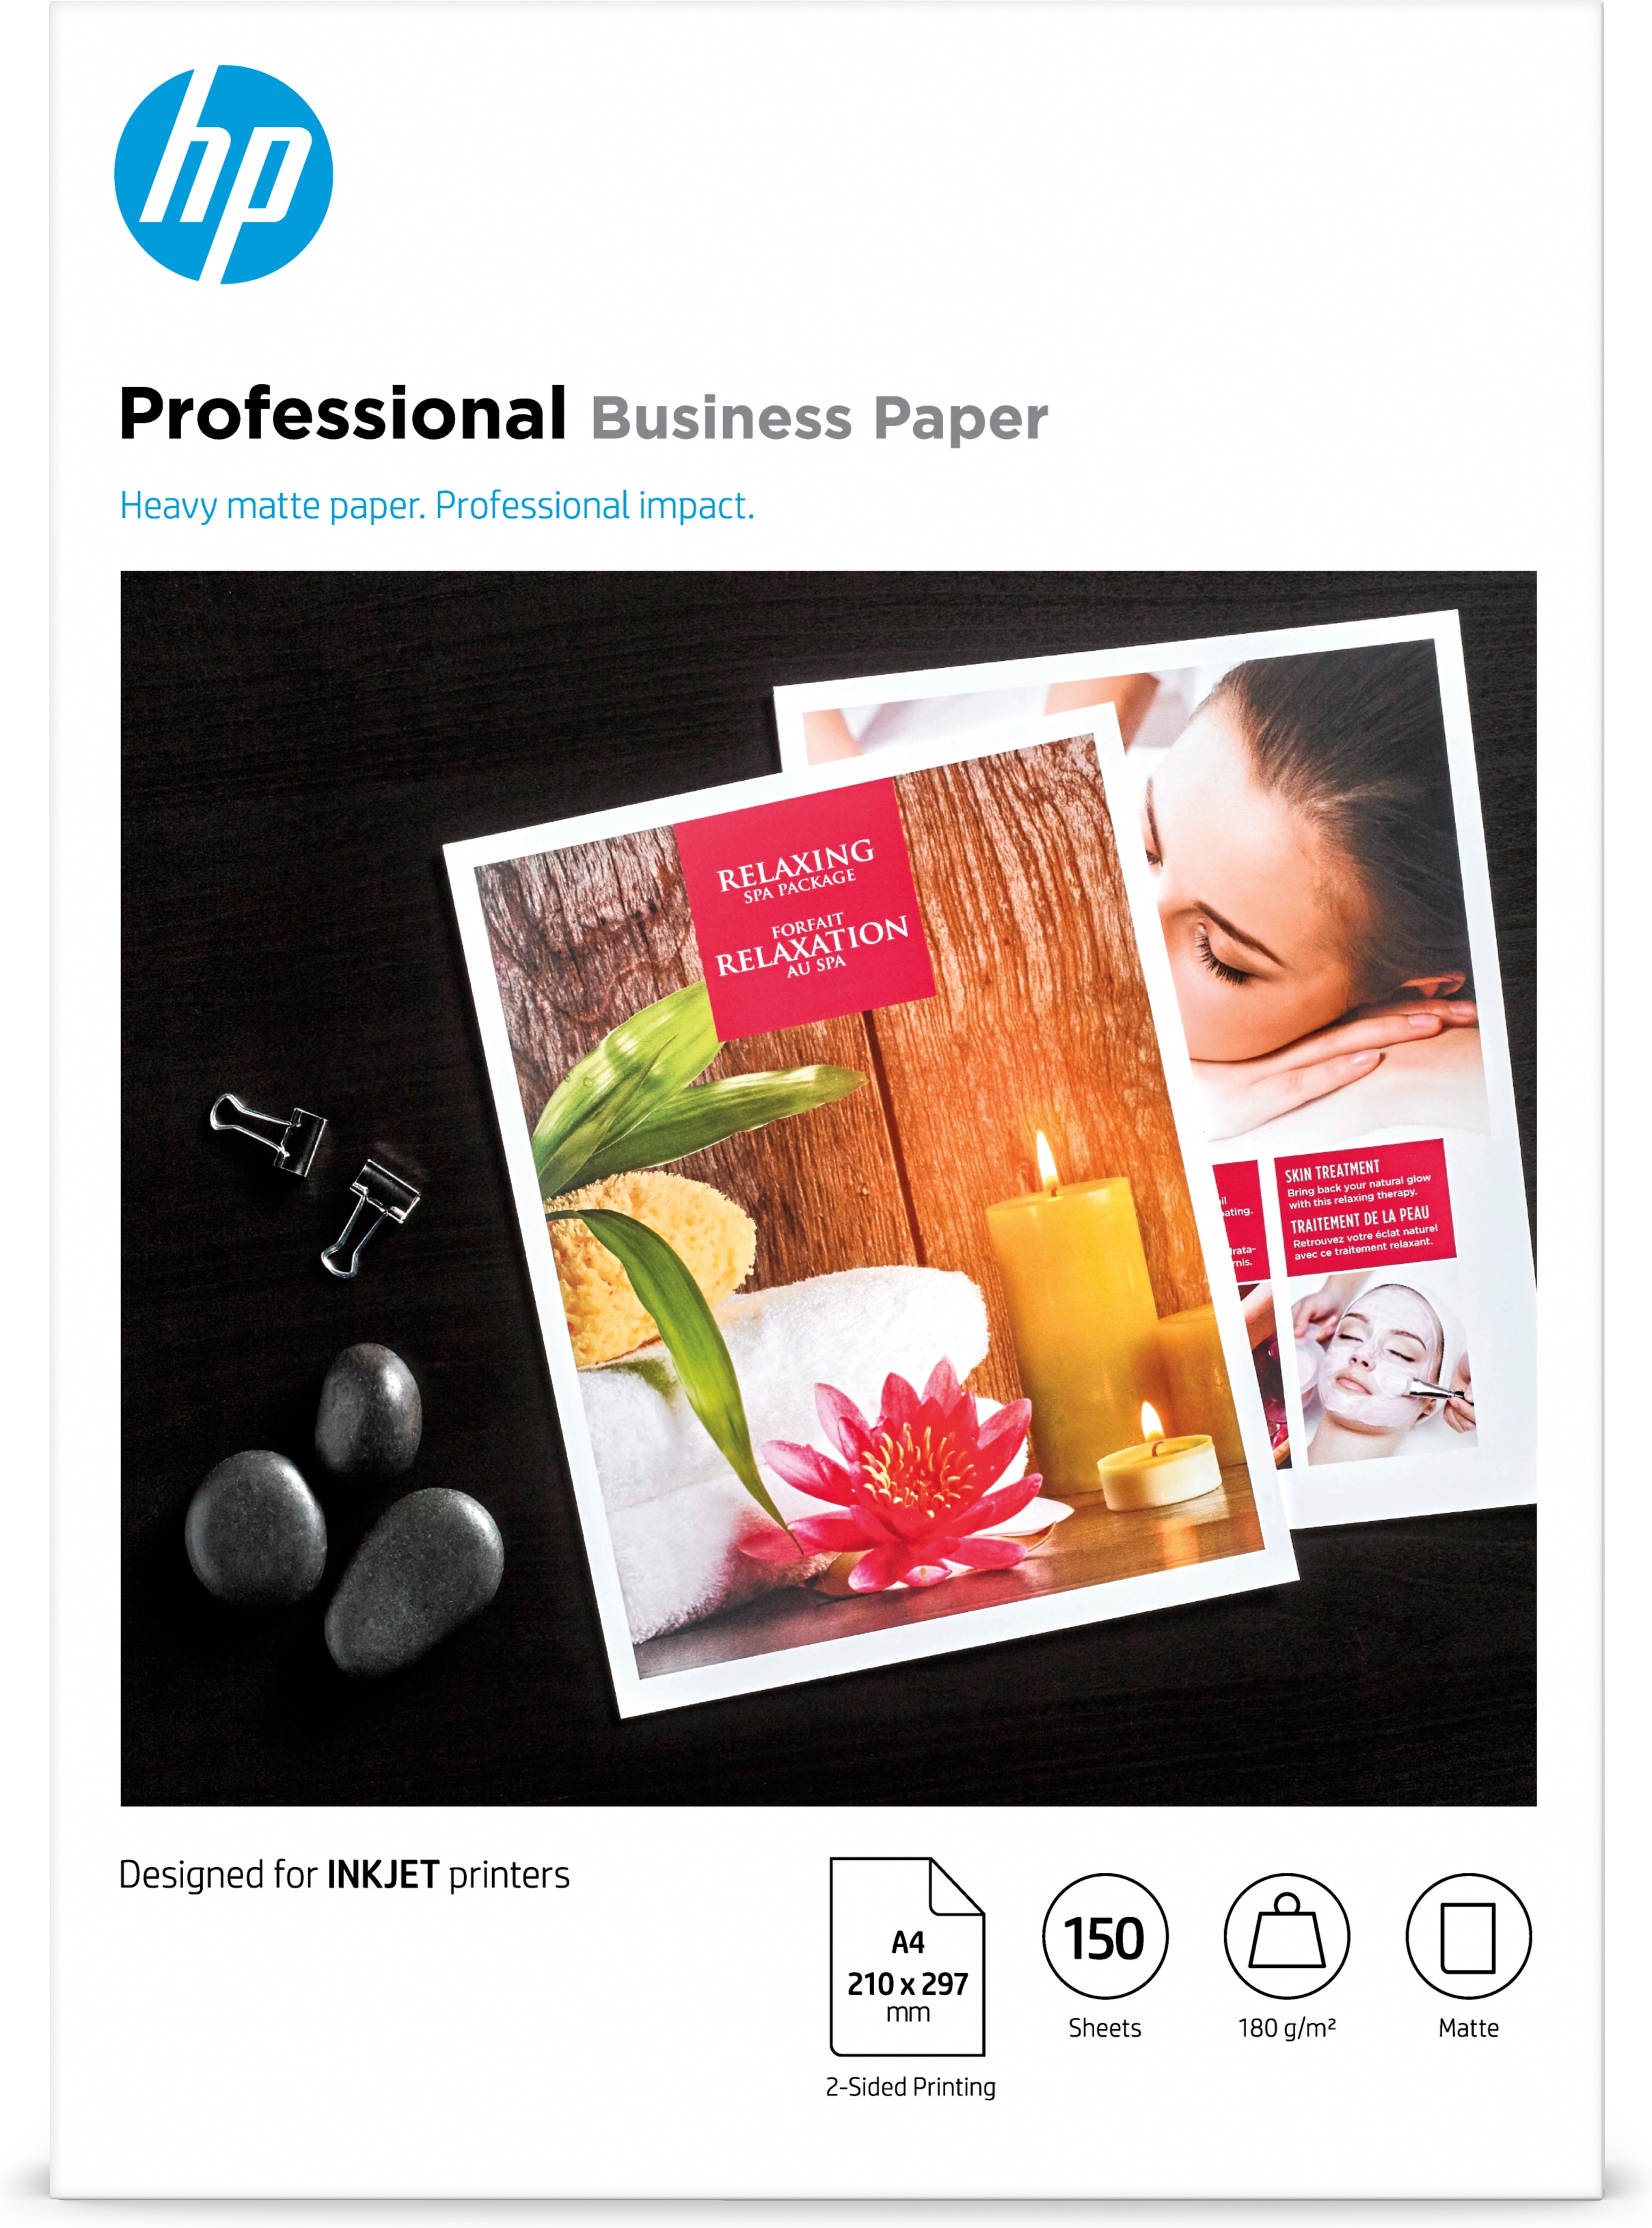 HP Professional Business-papir, mat, 180 g/m2, A4 (210 x 297 mm), 150 ark